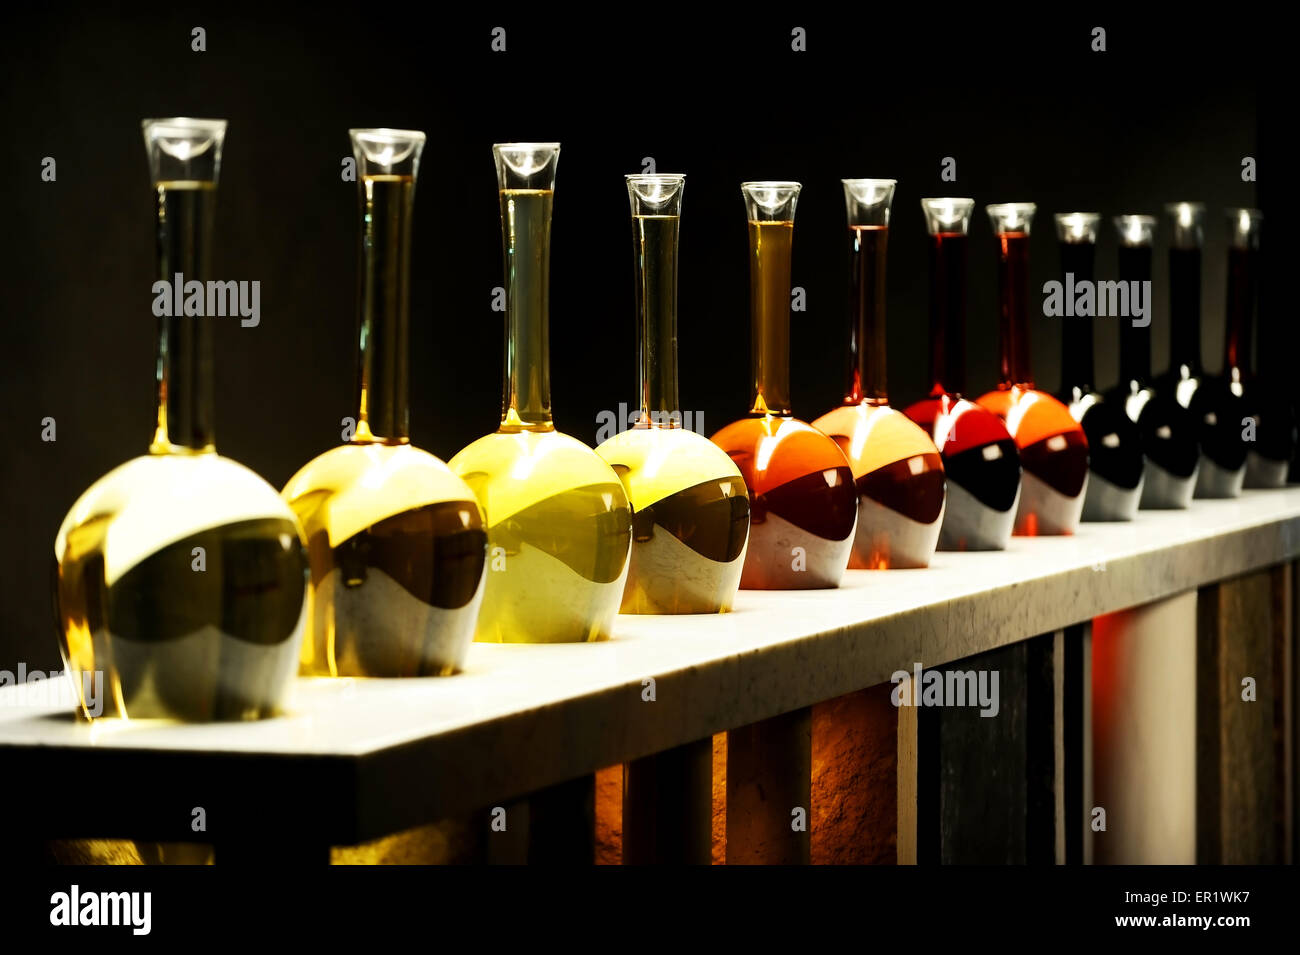 Verschiedene Arten von Wein in großen Spezialflaschen auf schwarzem Hintergrund Stockfoto